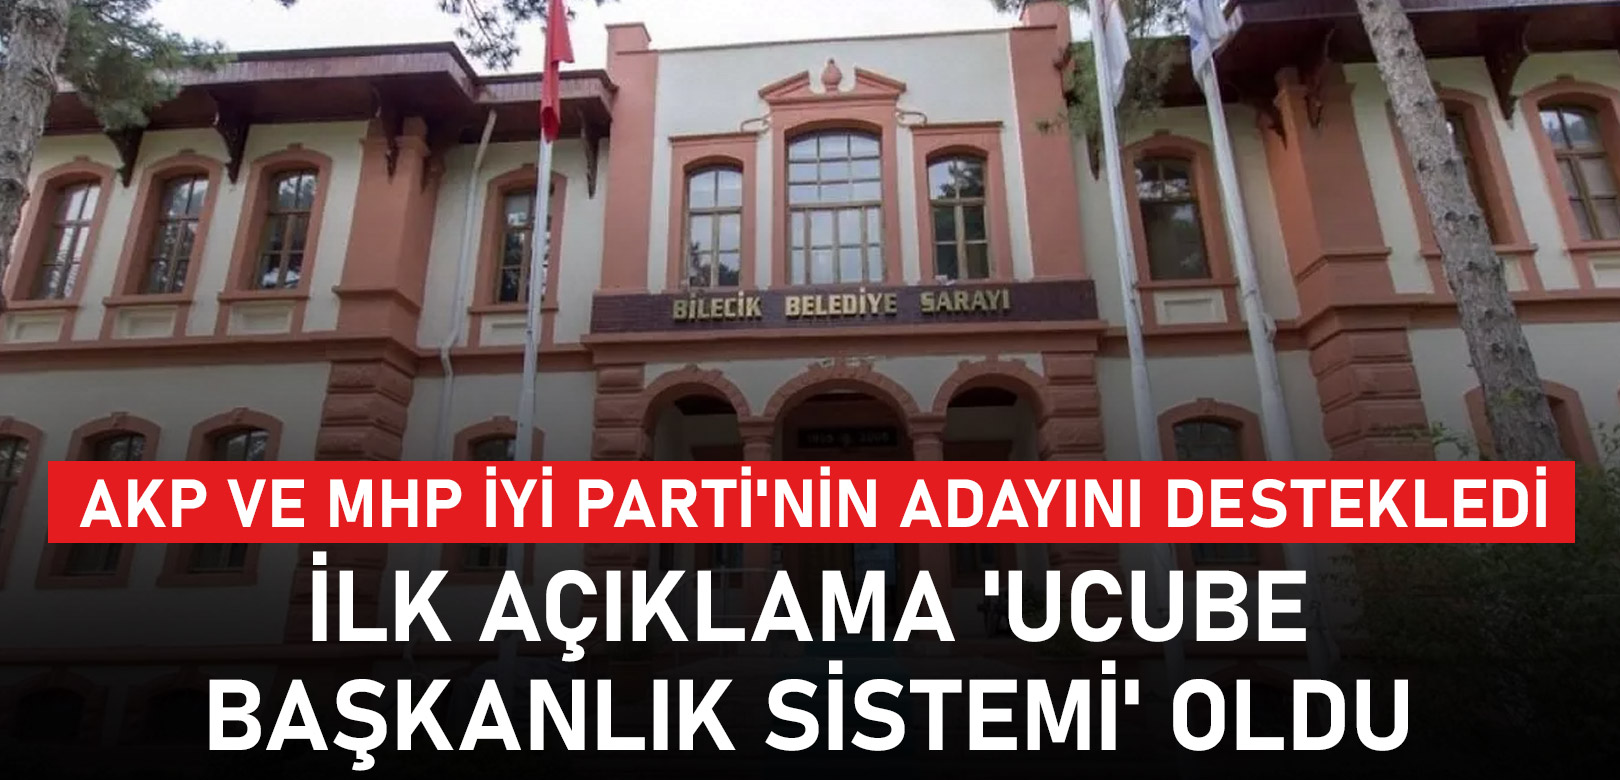 AKP ve MHP, İYİ Parti'nin adayını destekledi: İlk açıklama 'ucube başkanlık sistemi' oldu